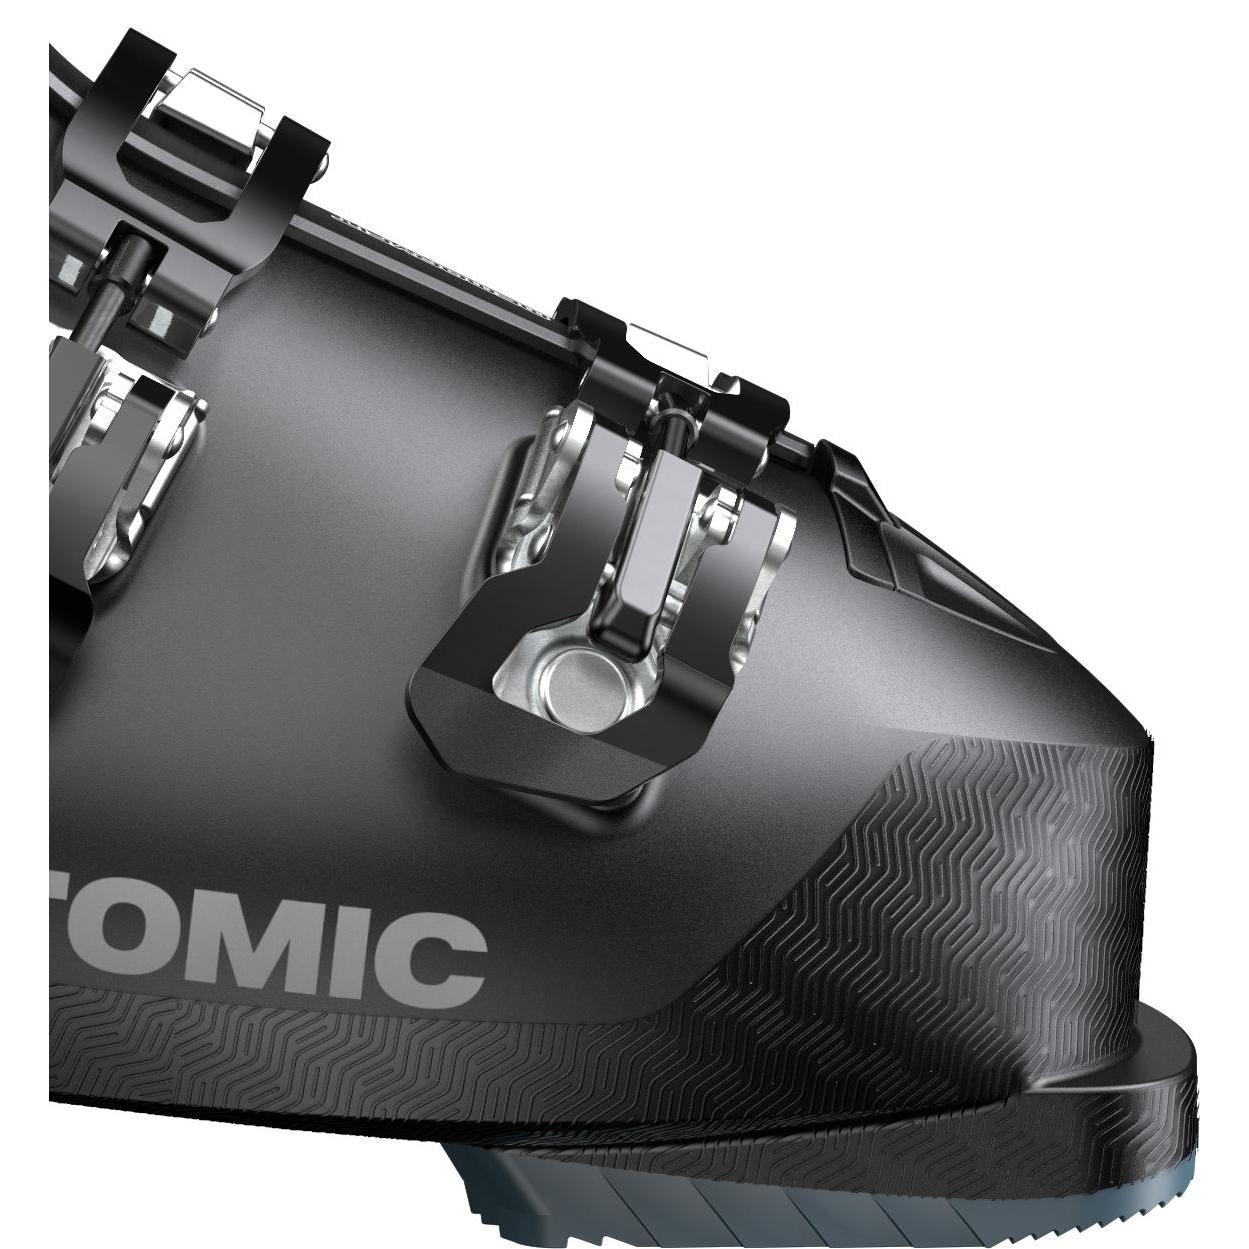 Горнолыжные ботинки ATOMIC Hawx Prime 95 W Black/Denim